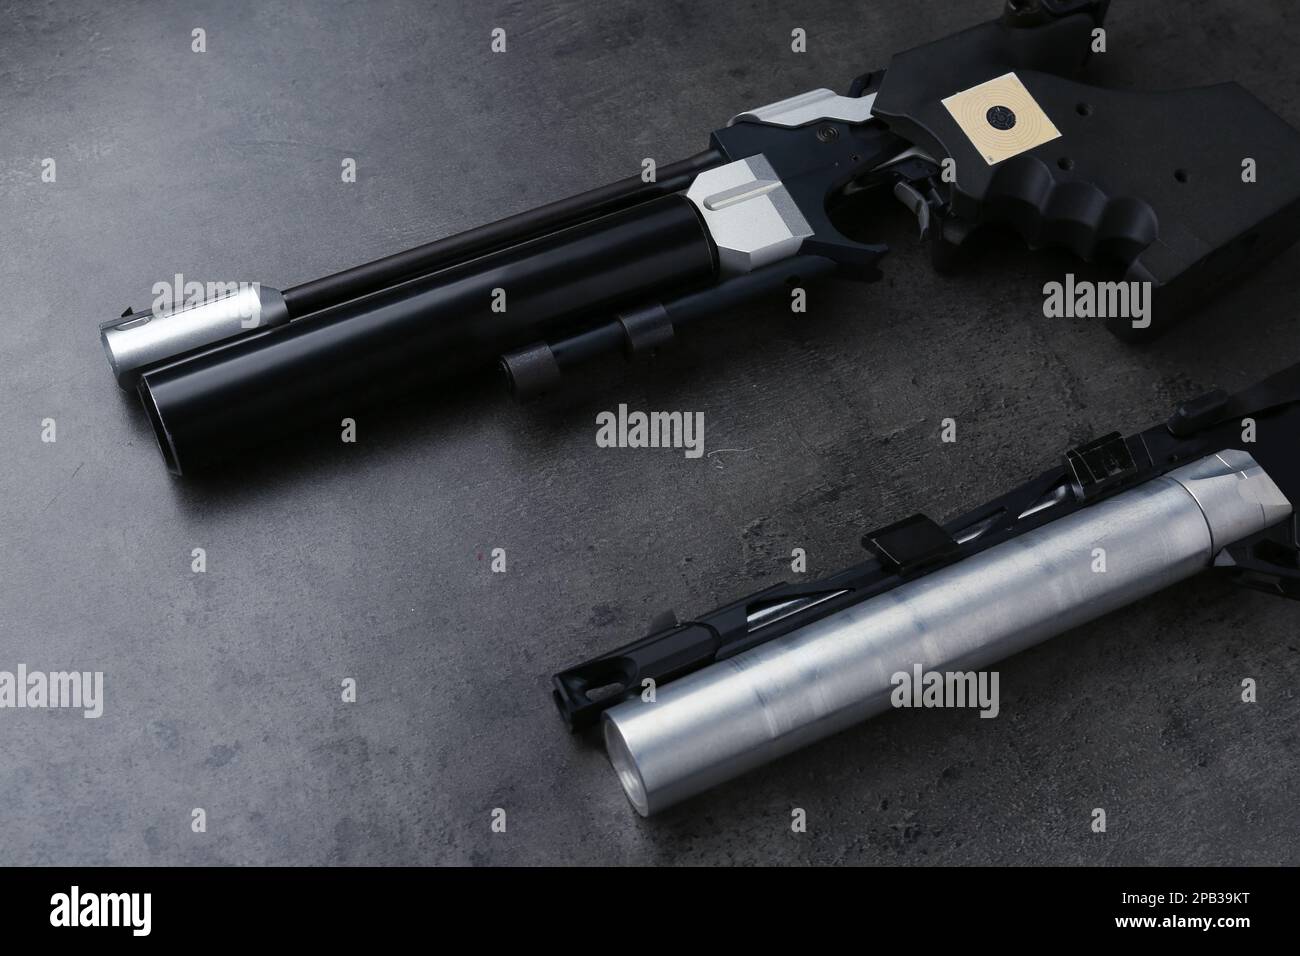 Différents pistolets de sport sur table noire. Pistolets professionnels Banque D'Images